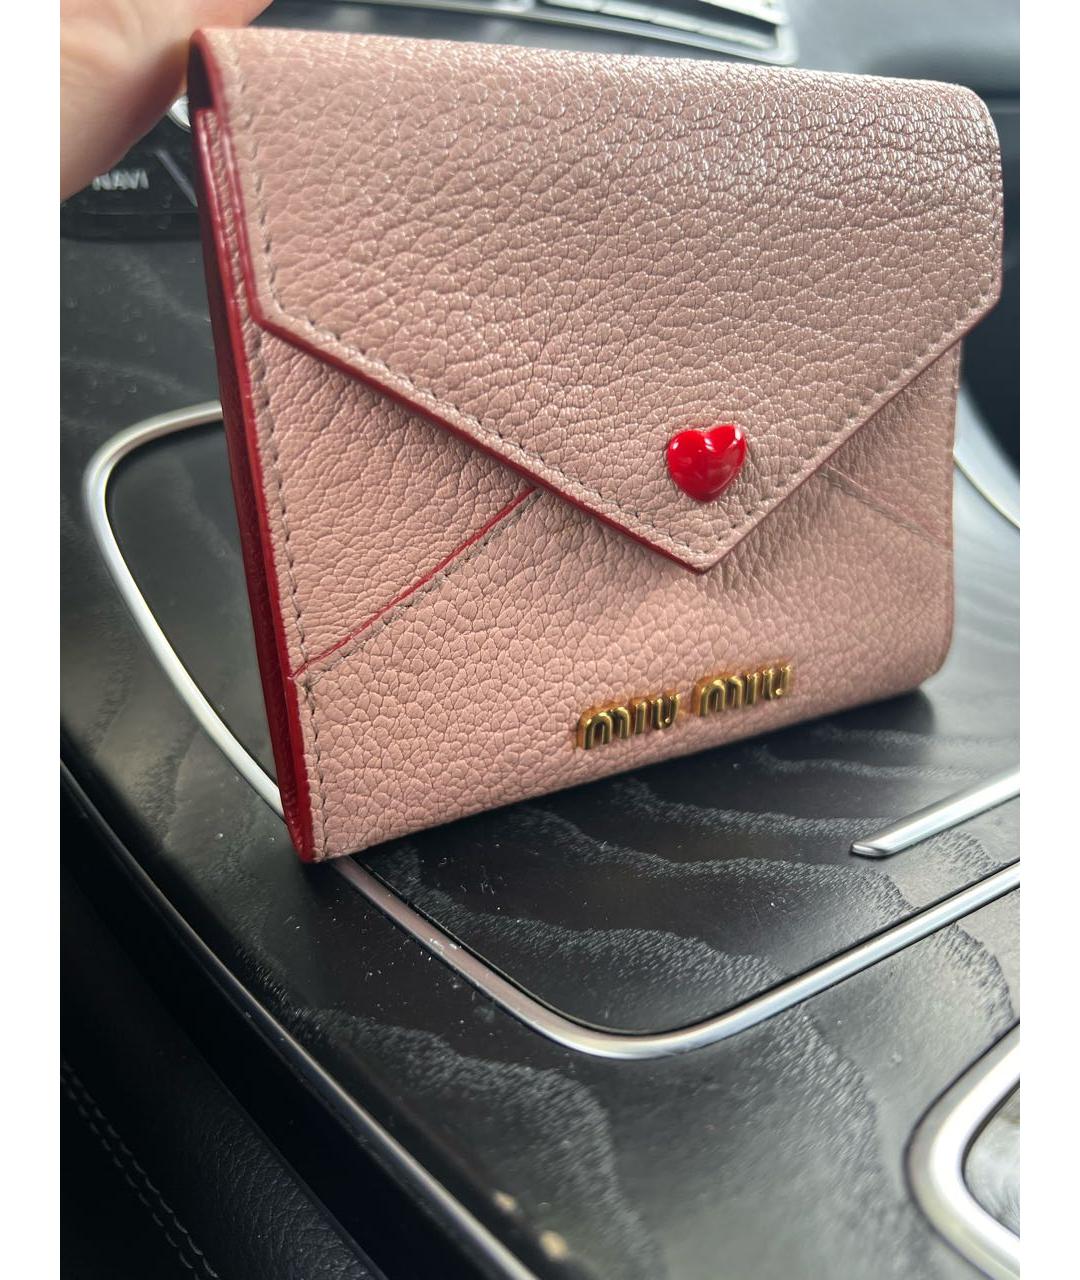 MIU MIU Розовый кожаный кошелек, фото 2